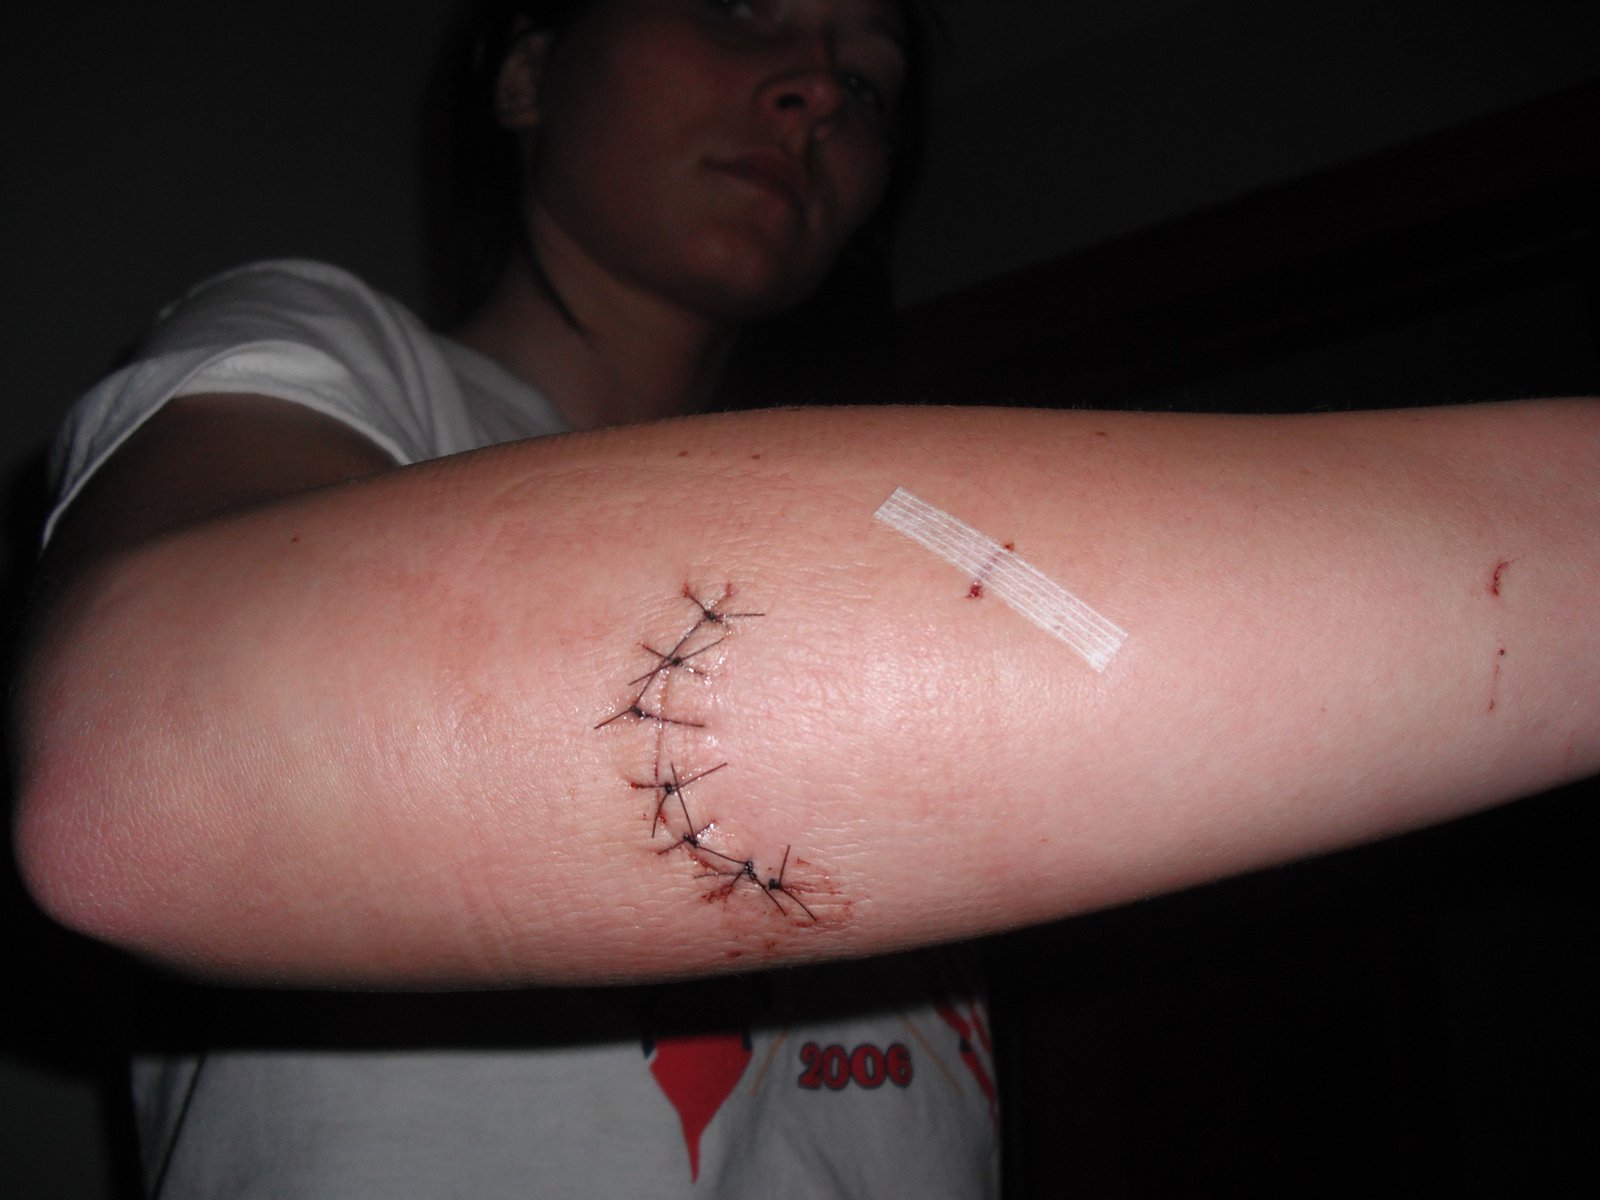 7 stitches